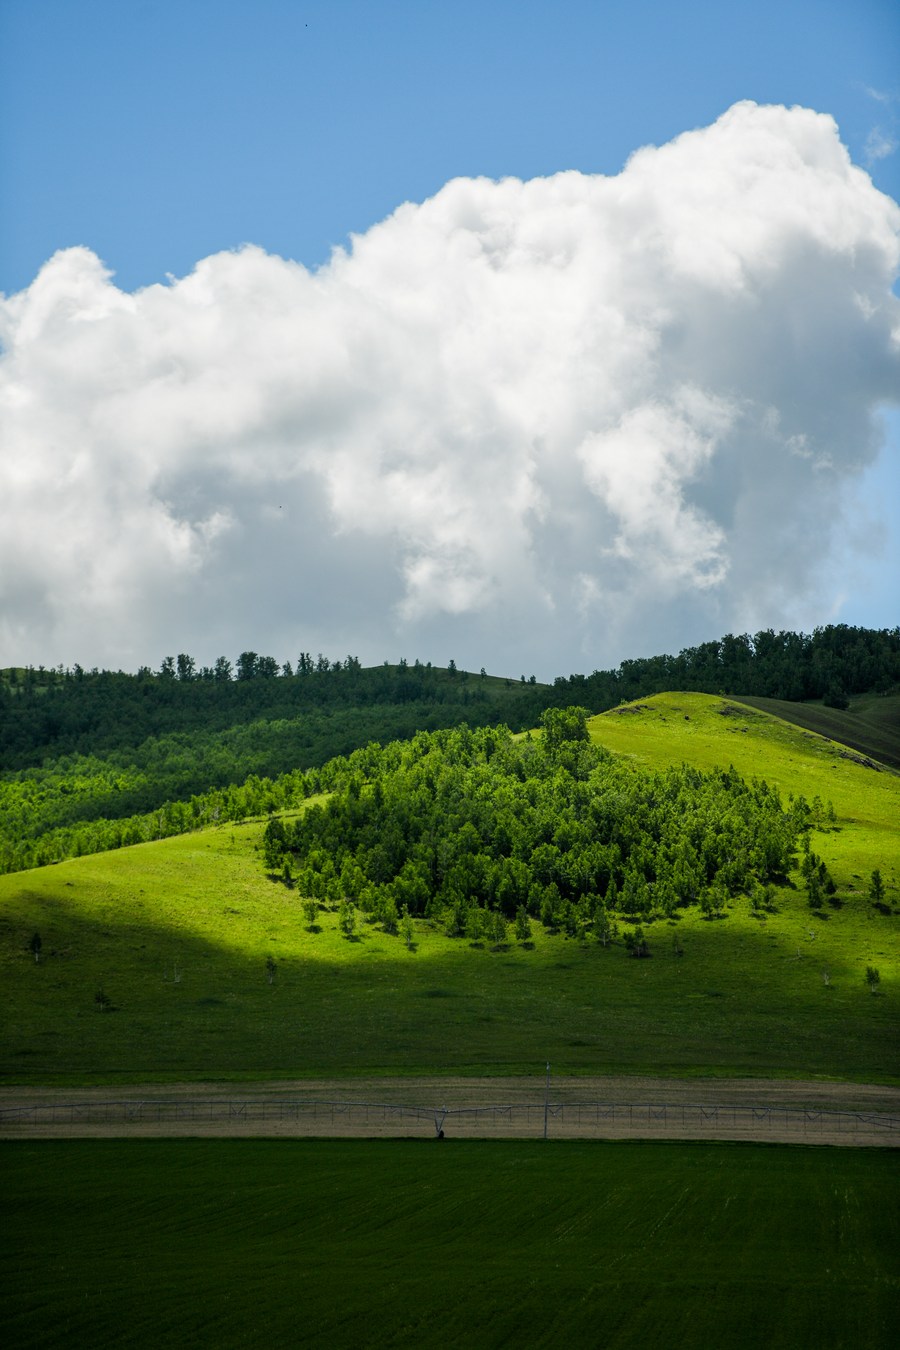 ทุ่งหญ้า 'มองโกเลียใน' เขียวชอุ่มรับคิมหันตฤดู